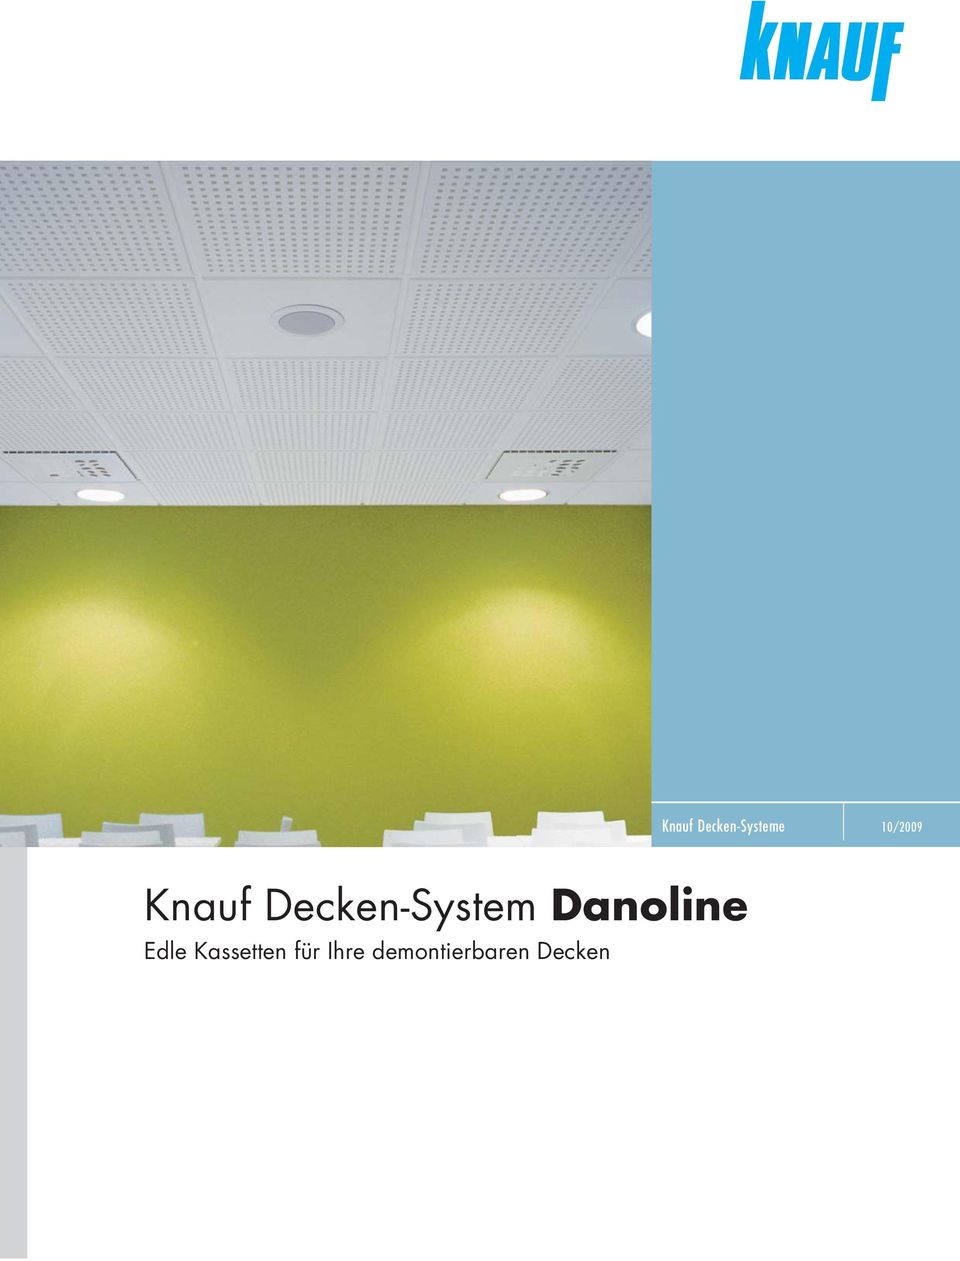 Decken-System Danoline